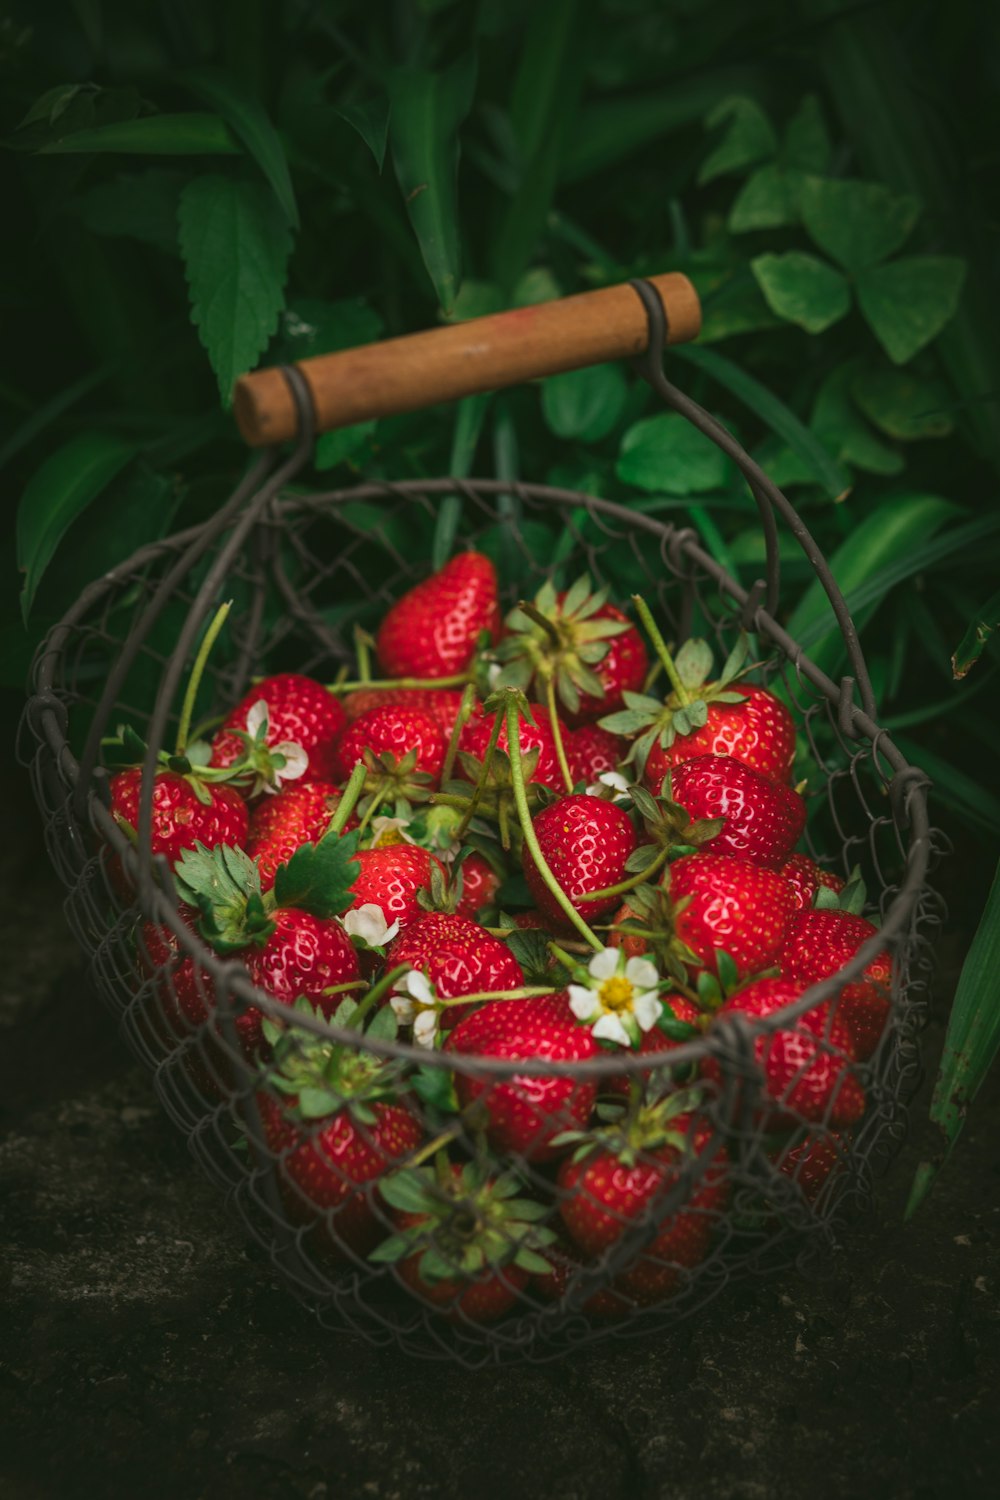 strawberries in metal basket